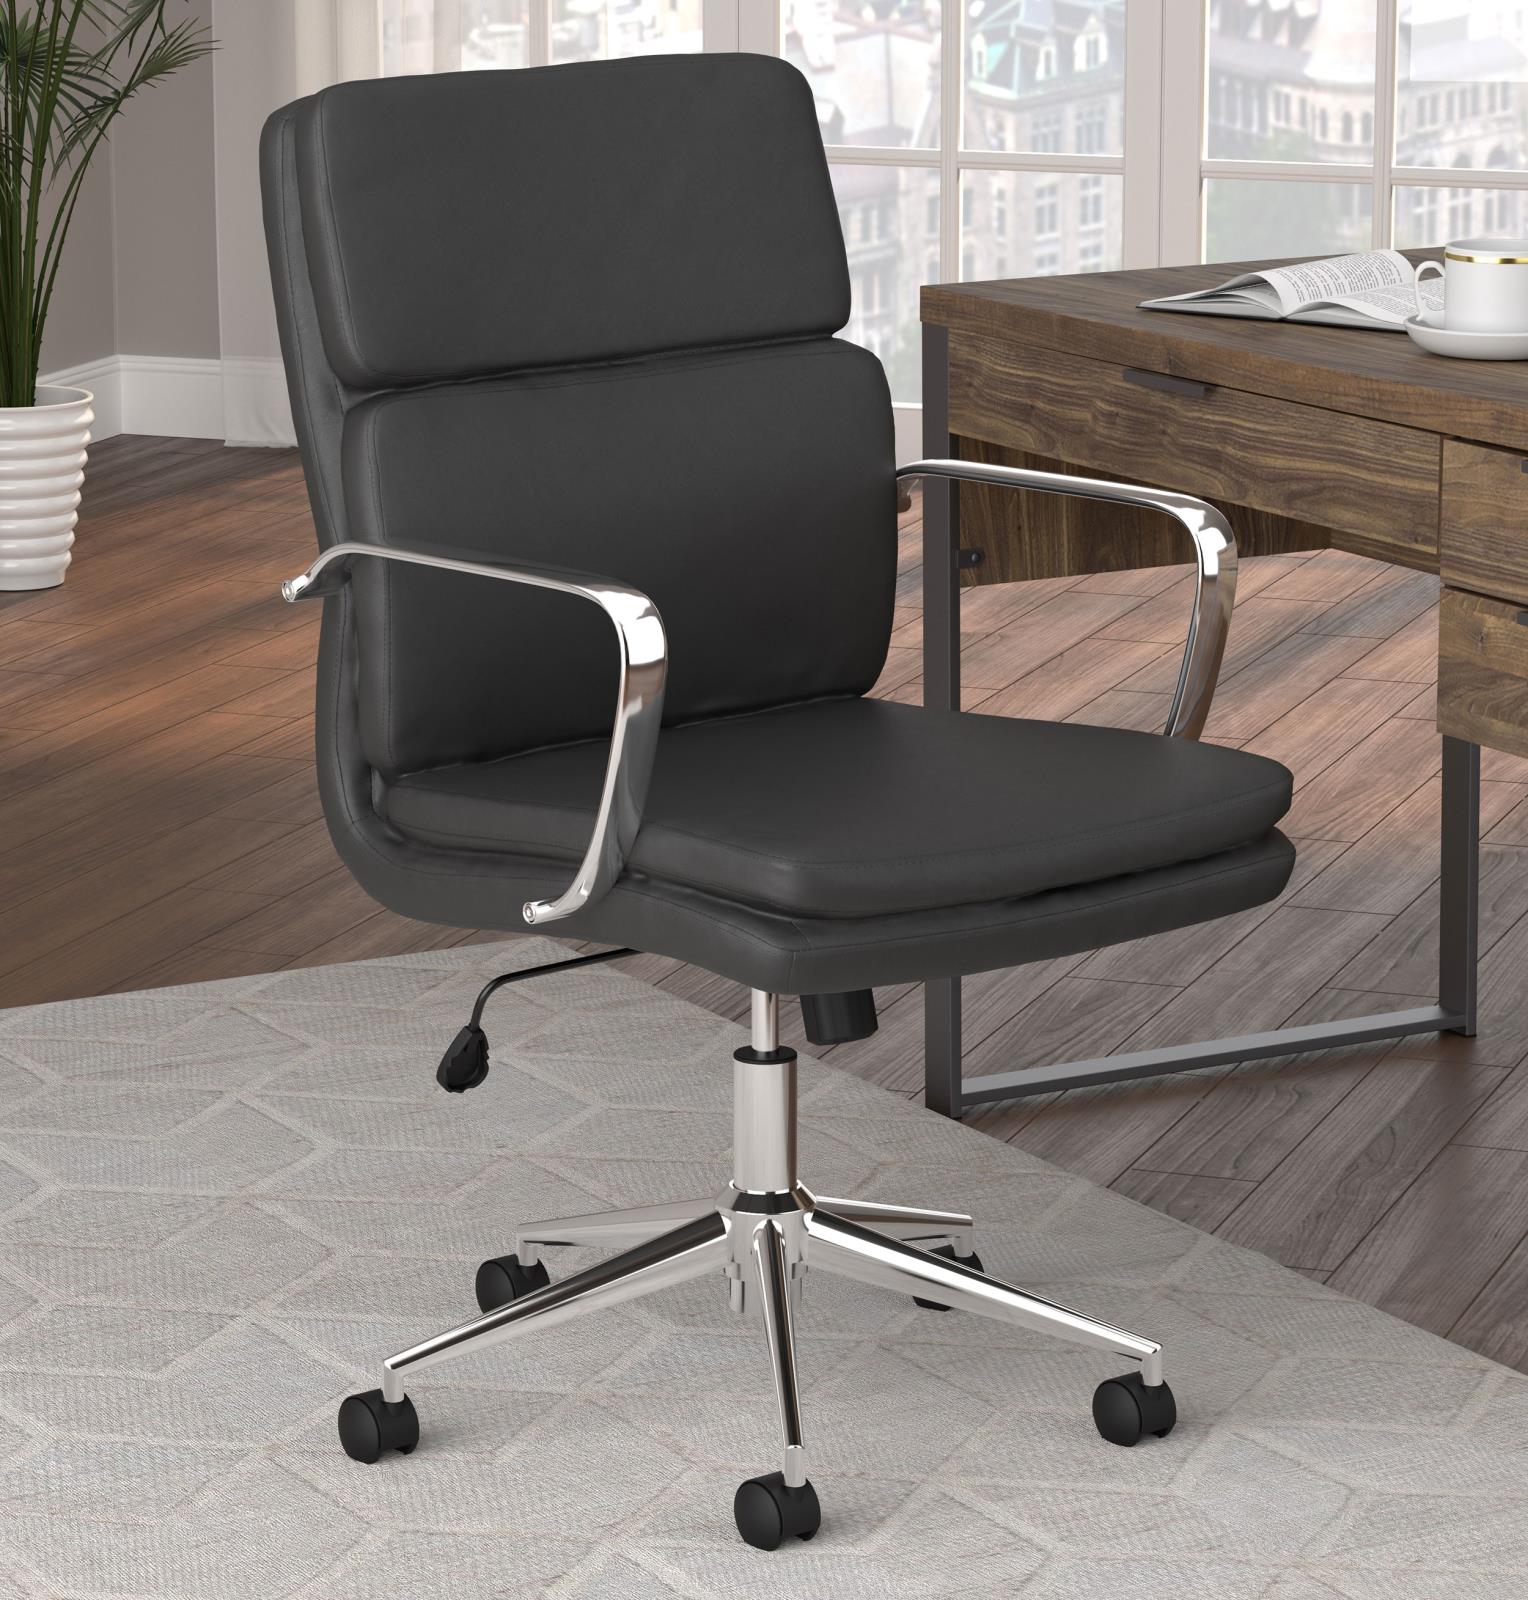 Black Upholsterd Office Chair 801765